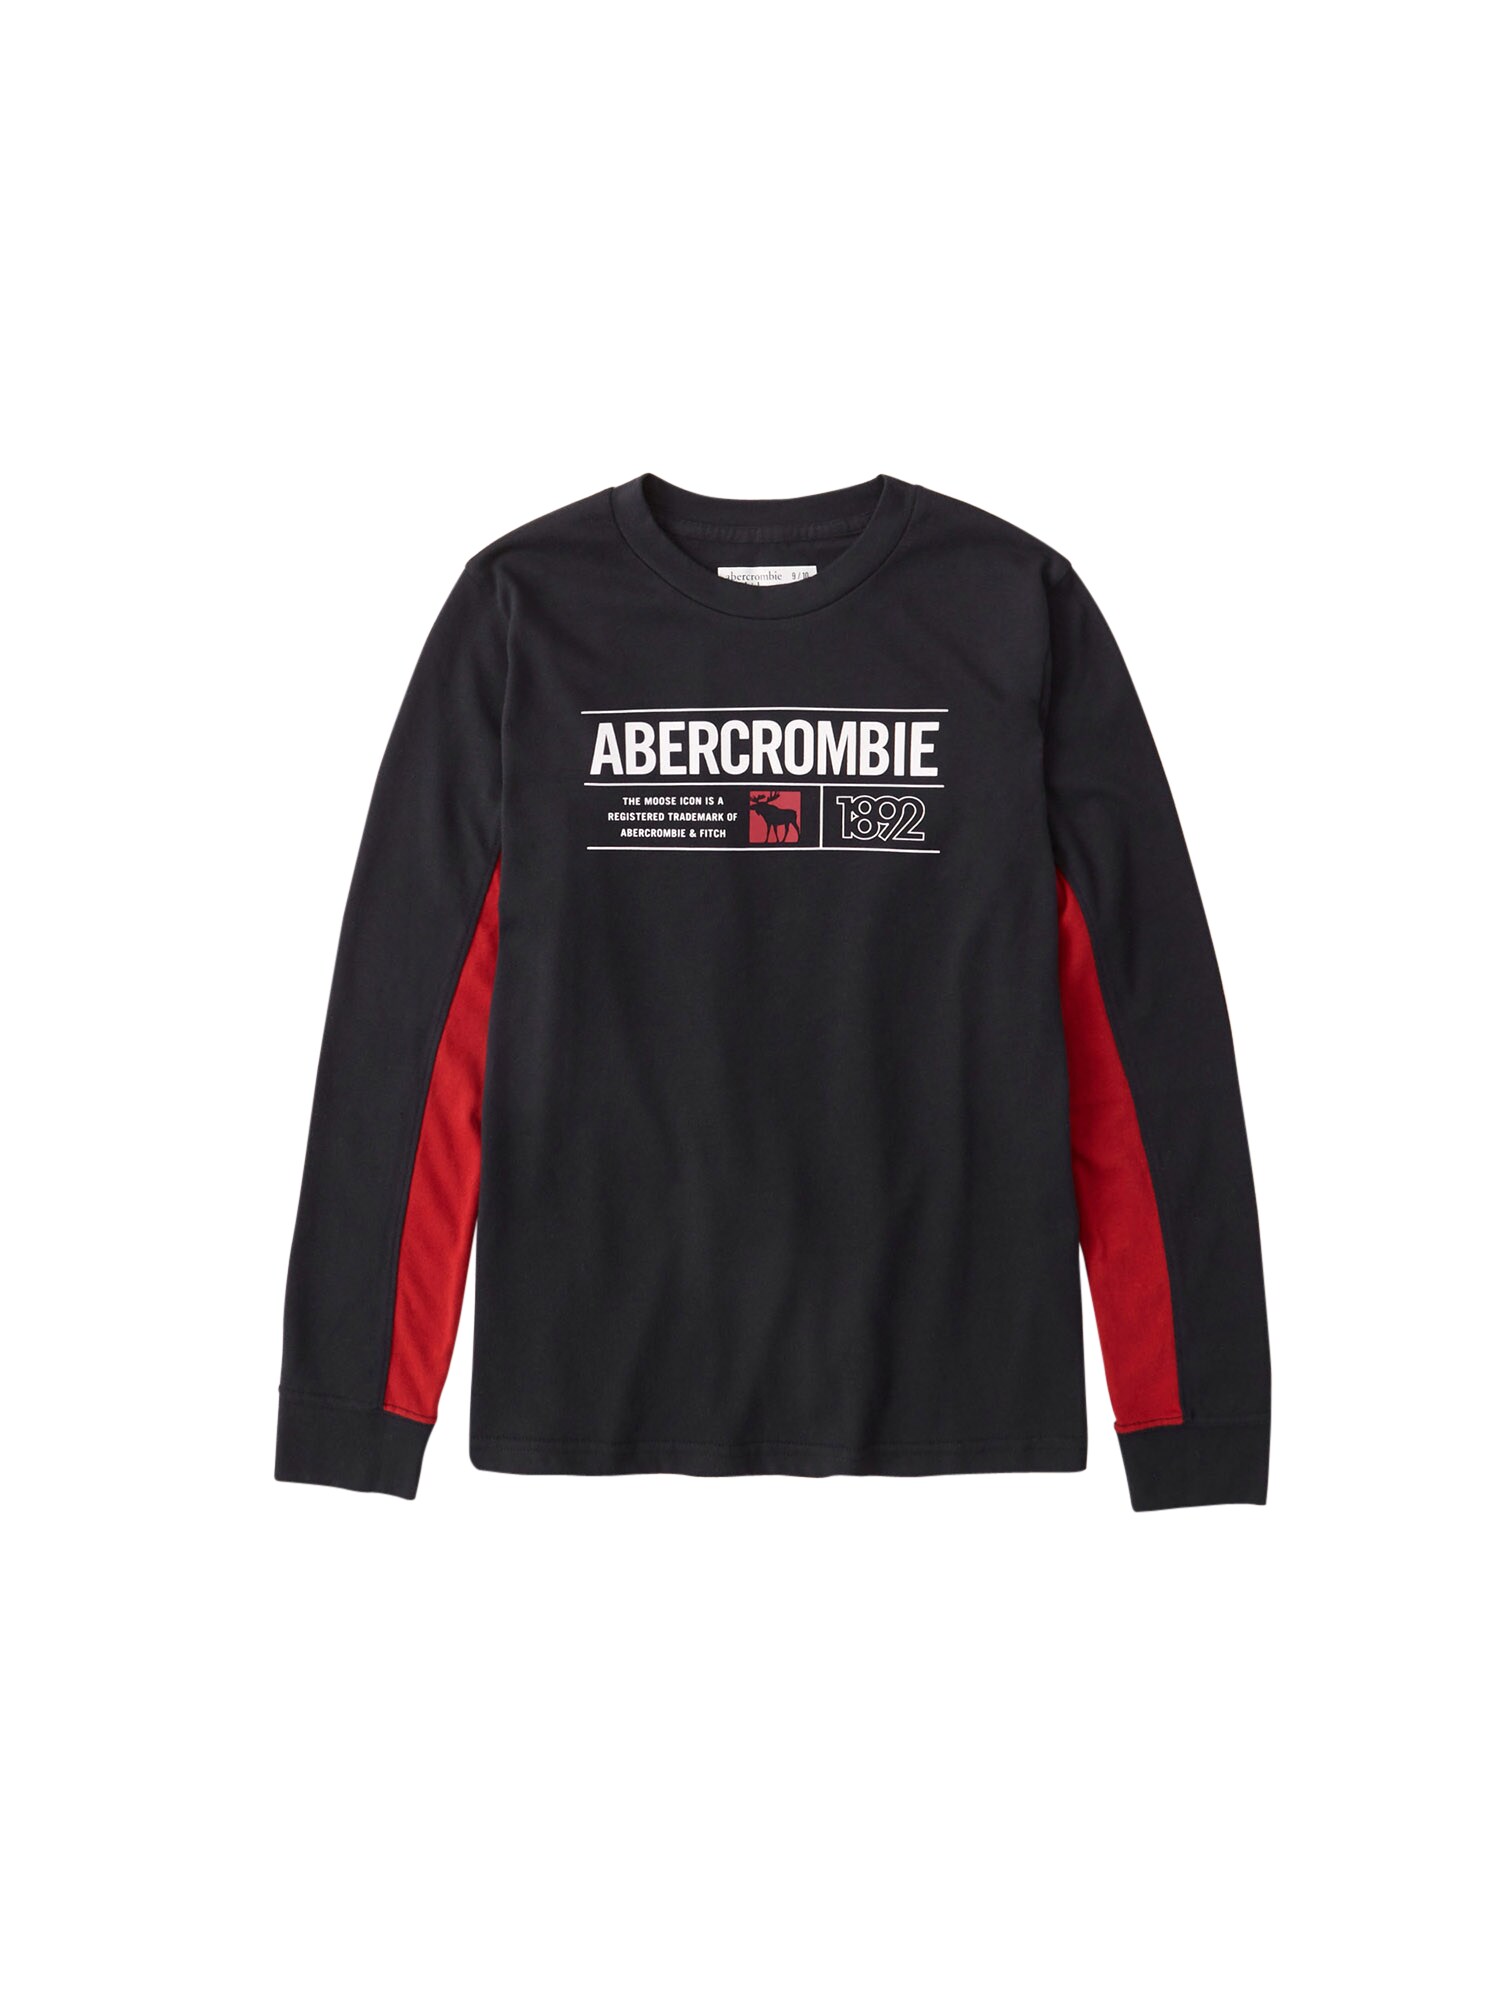 Abercrombie & Fitch Marškinėliai  juoda / ugnies raudona / balta